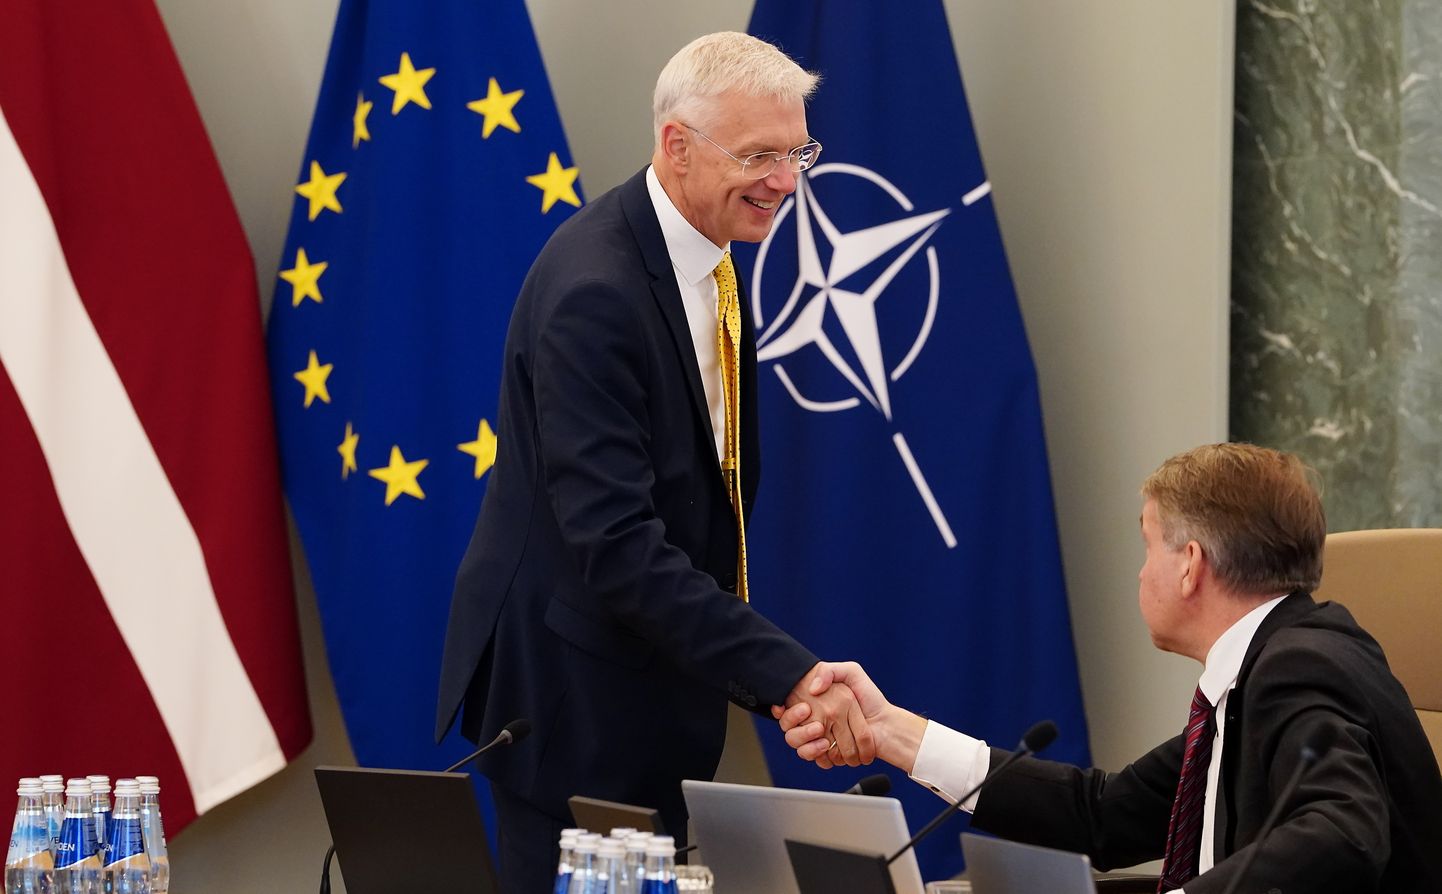 Läti välisminister ja endine peaminister Arturs Krišjānis Kariņš kätleb NATO, ELi ja Läti lipu taustal heaoluministrit Uldis Augulist.